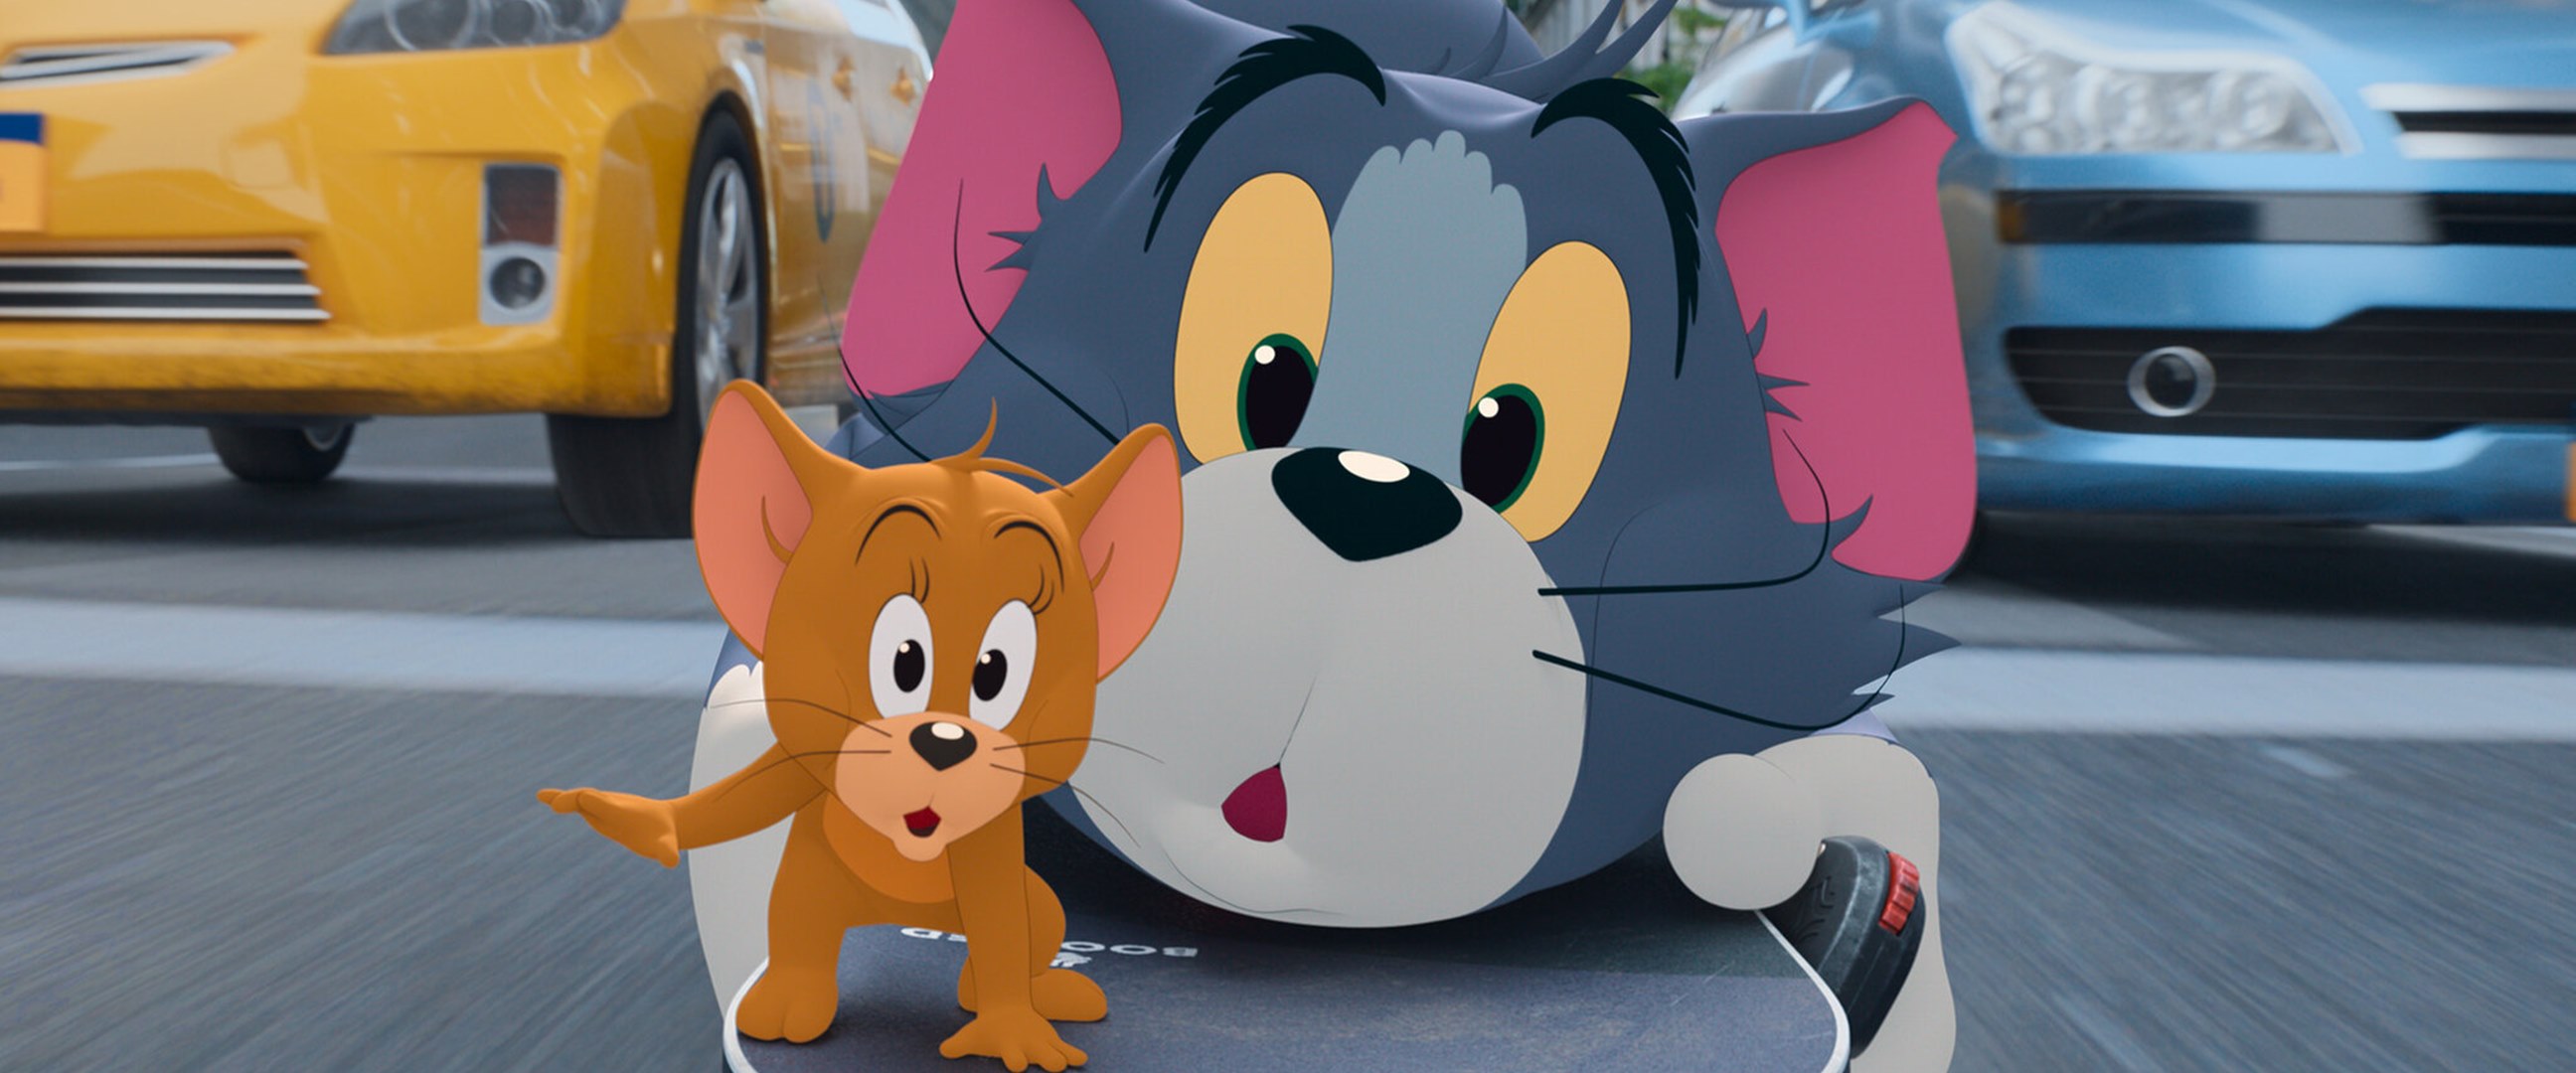 Tom vs Jerry, pilihanmu bisa menggambarkan pribadimu yang sebenarnya